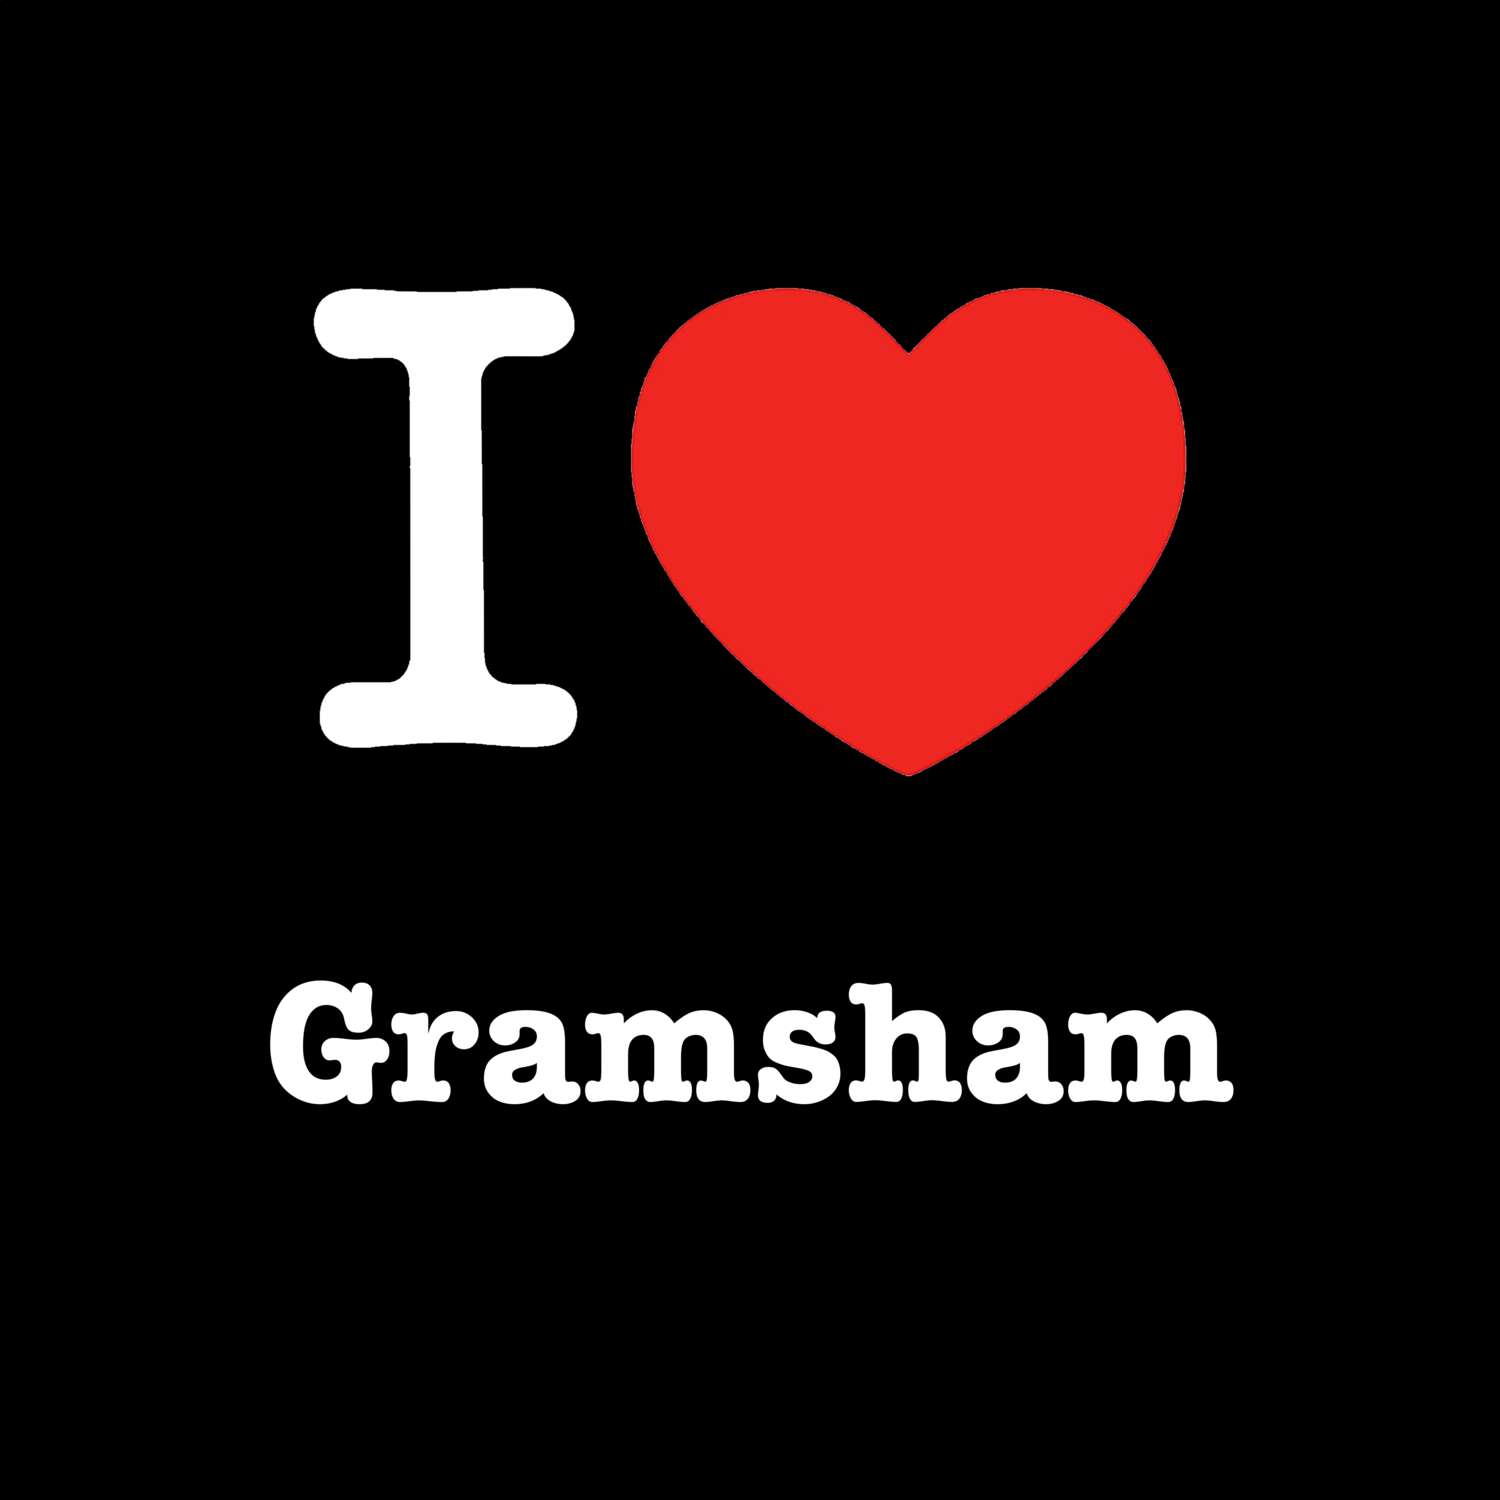 Gramsham T-Shirt »I love«